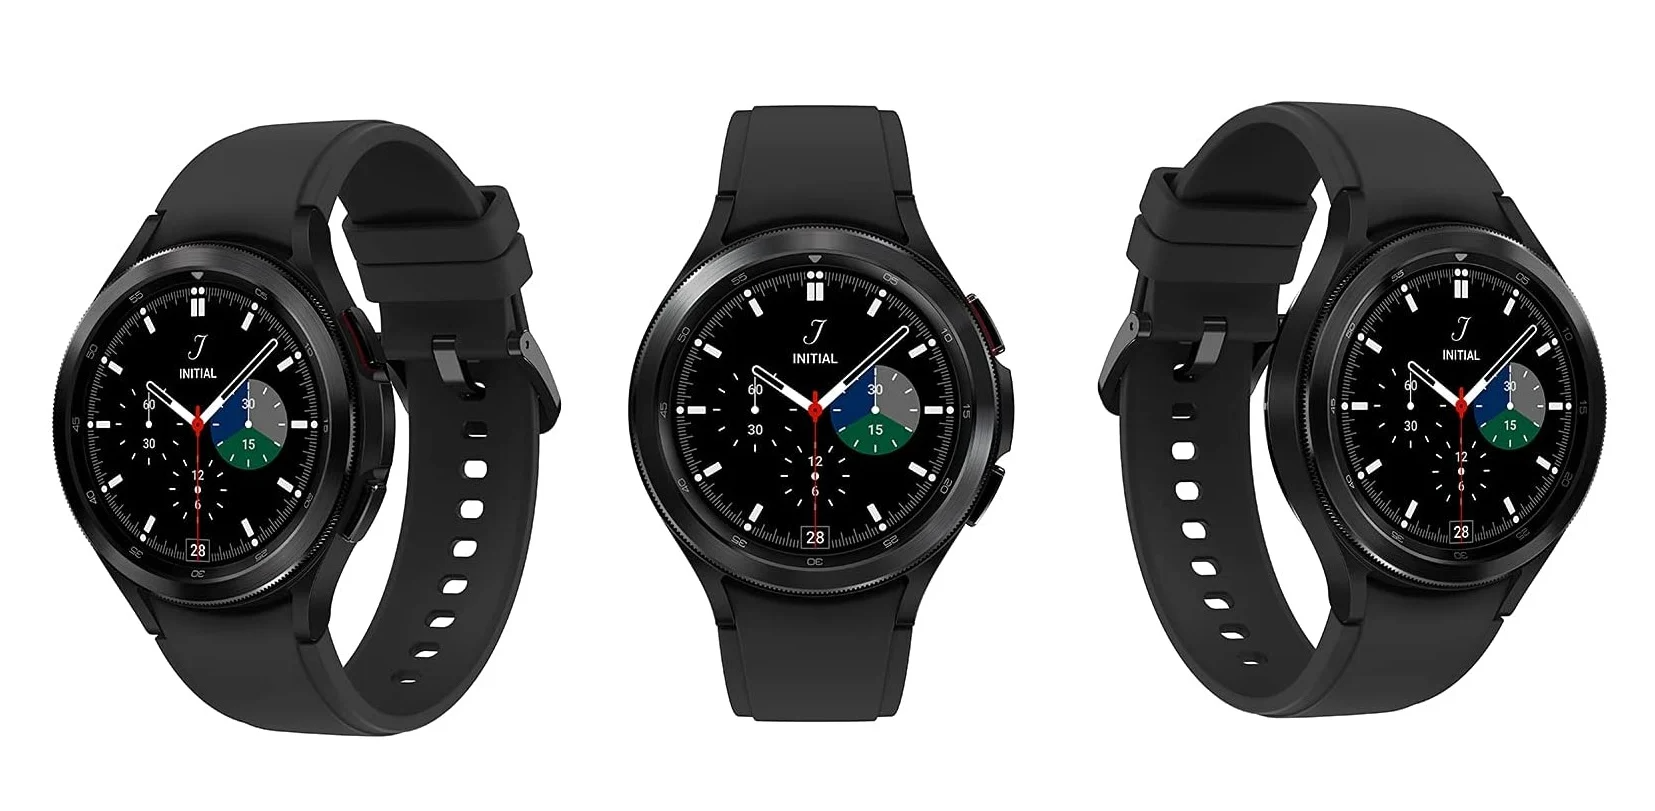 Детальні характеристики і ціни смарт-годин Samsung Galaxy Watch 4 і Galaxy Watch 4 Classic потрапили в мережу до анонсу